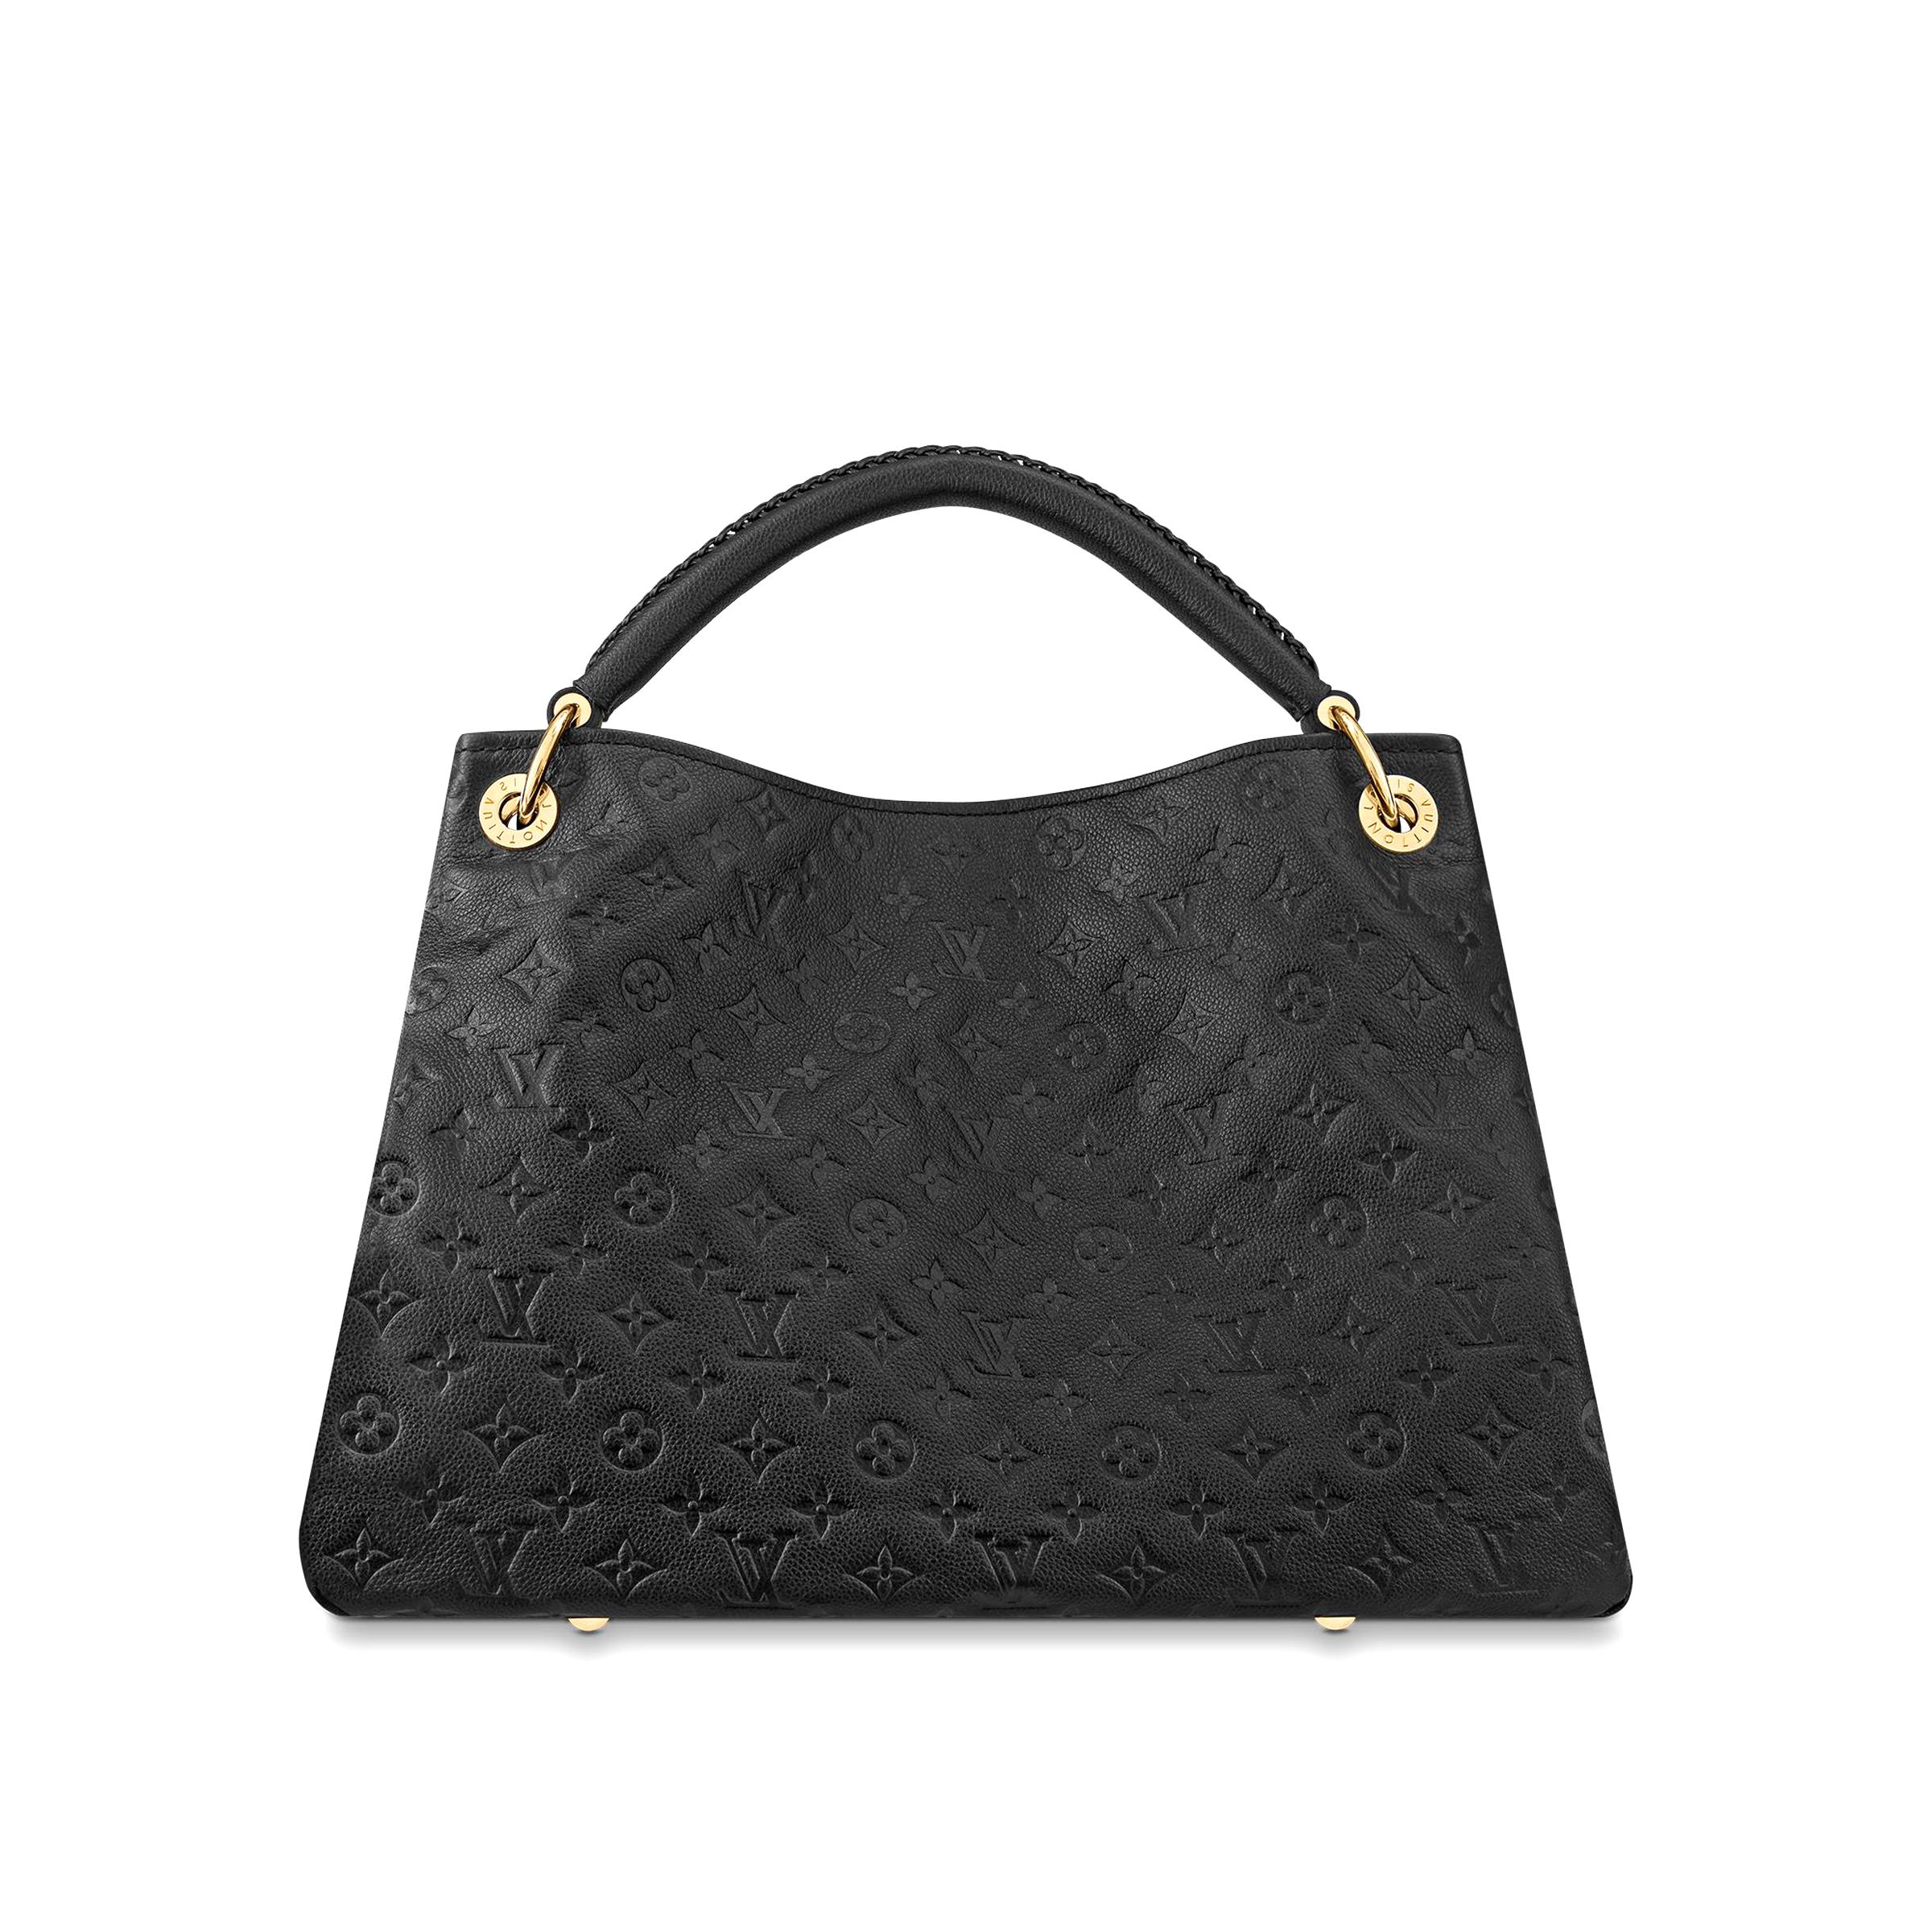 Louis Vuitton Tasche Schwarz gebraucht kaufen! Nur 4 St. bis -65% günstiger